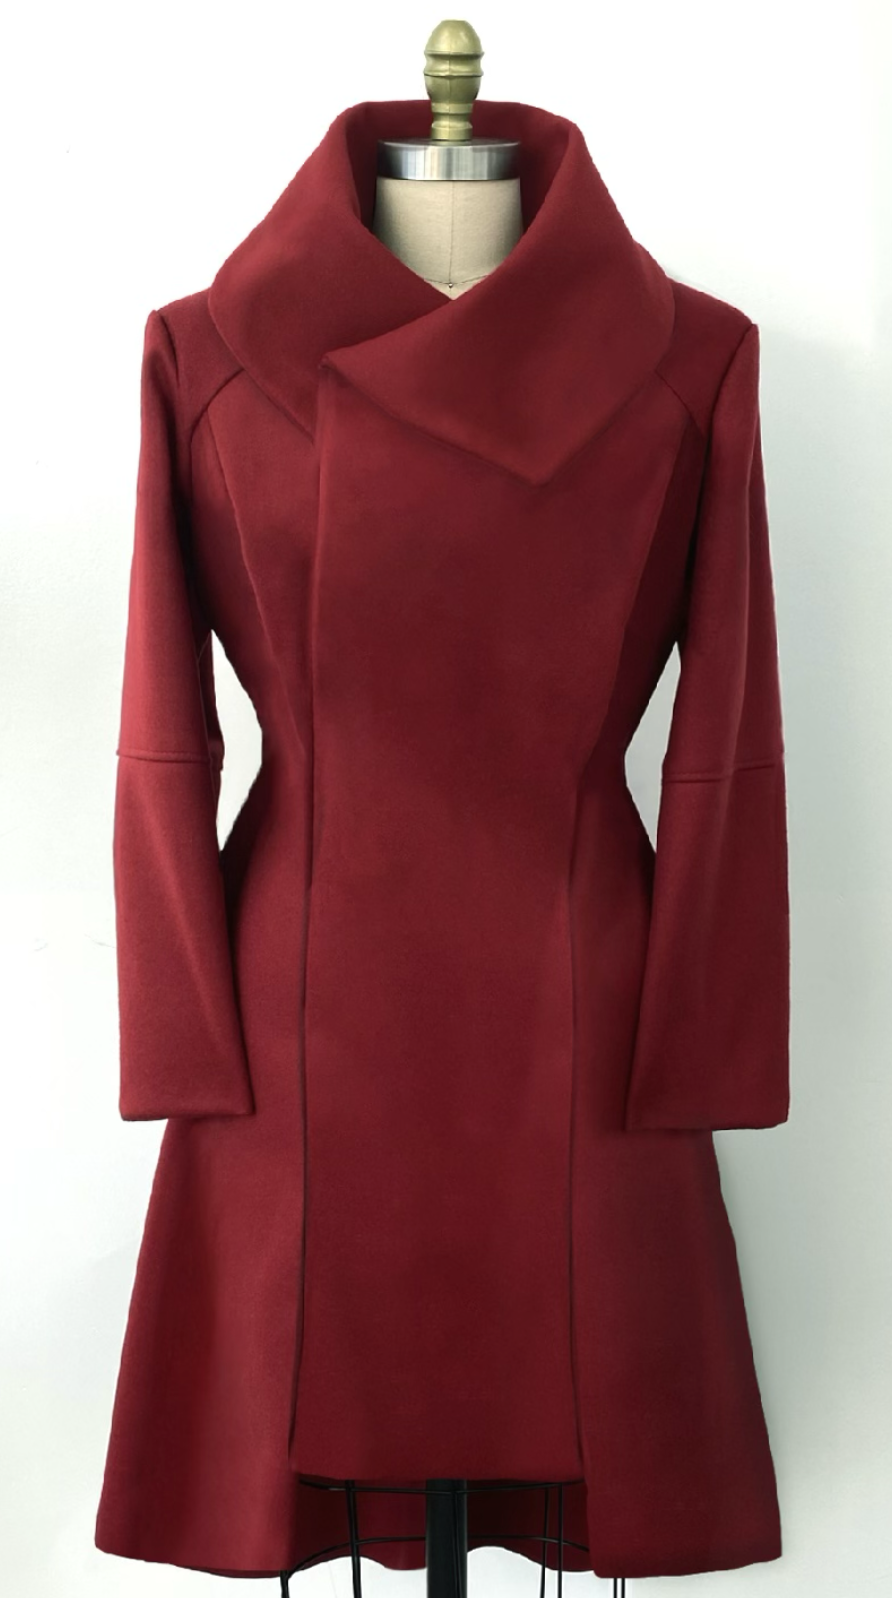 O haină lungă, roșie, cu guler înalt